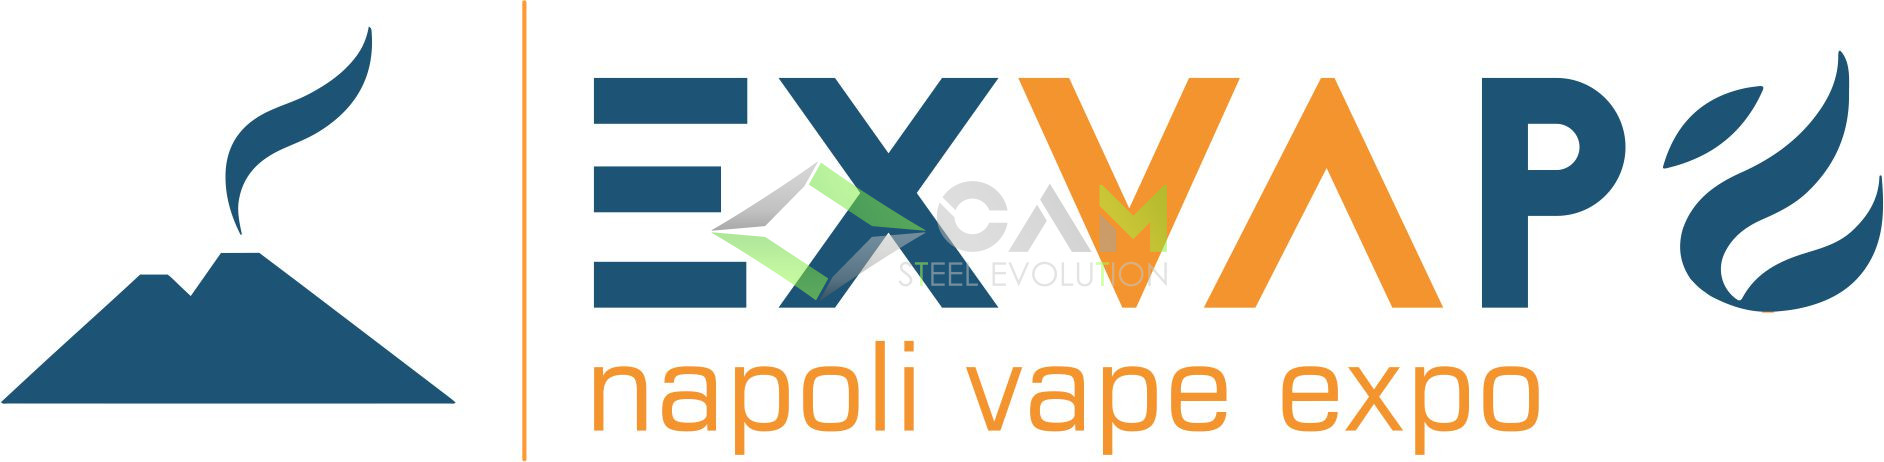 Al momento stai visualizzando EXVAPO Napoli